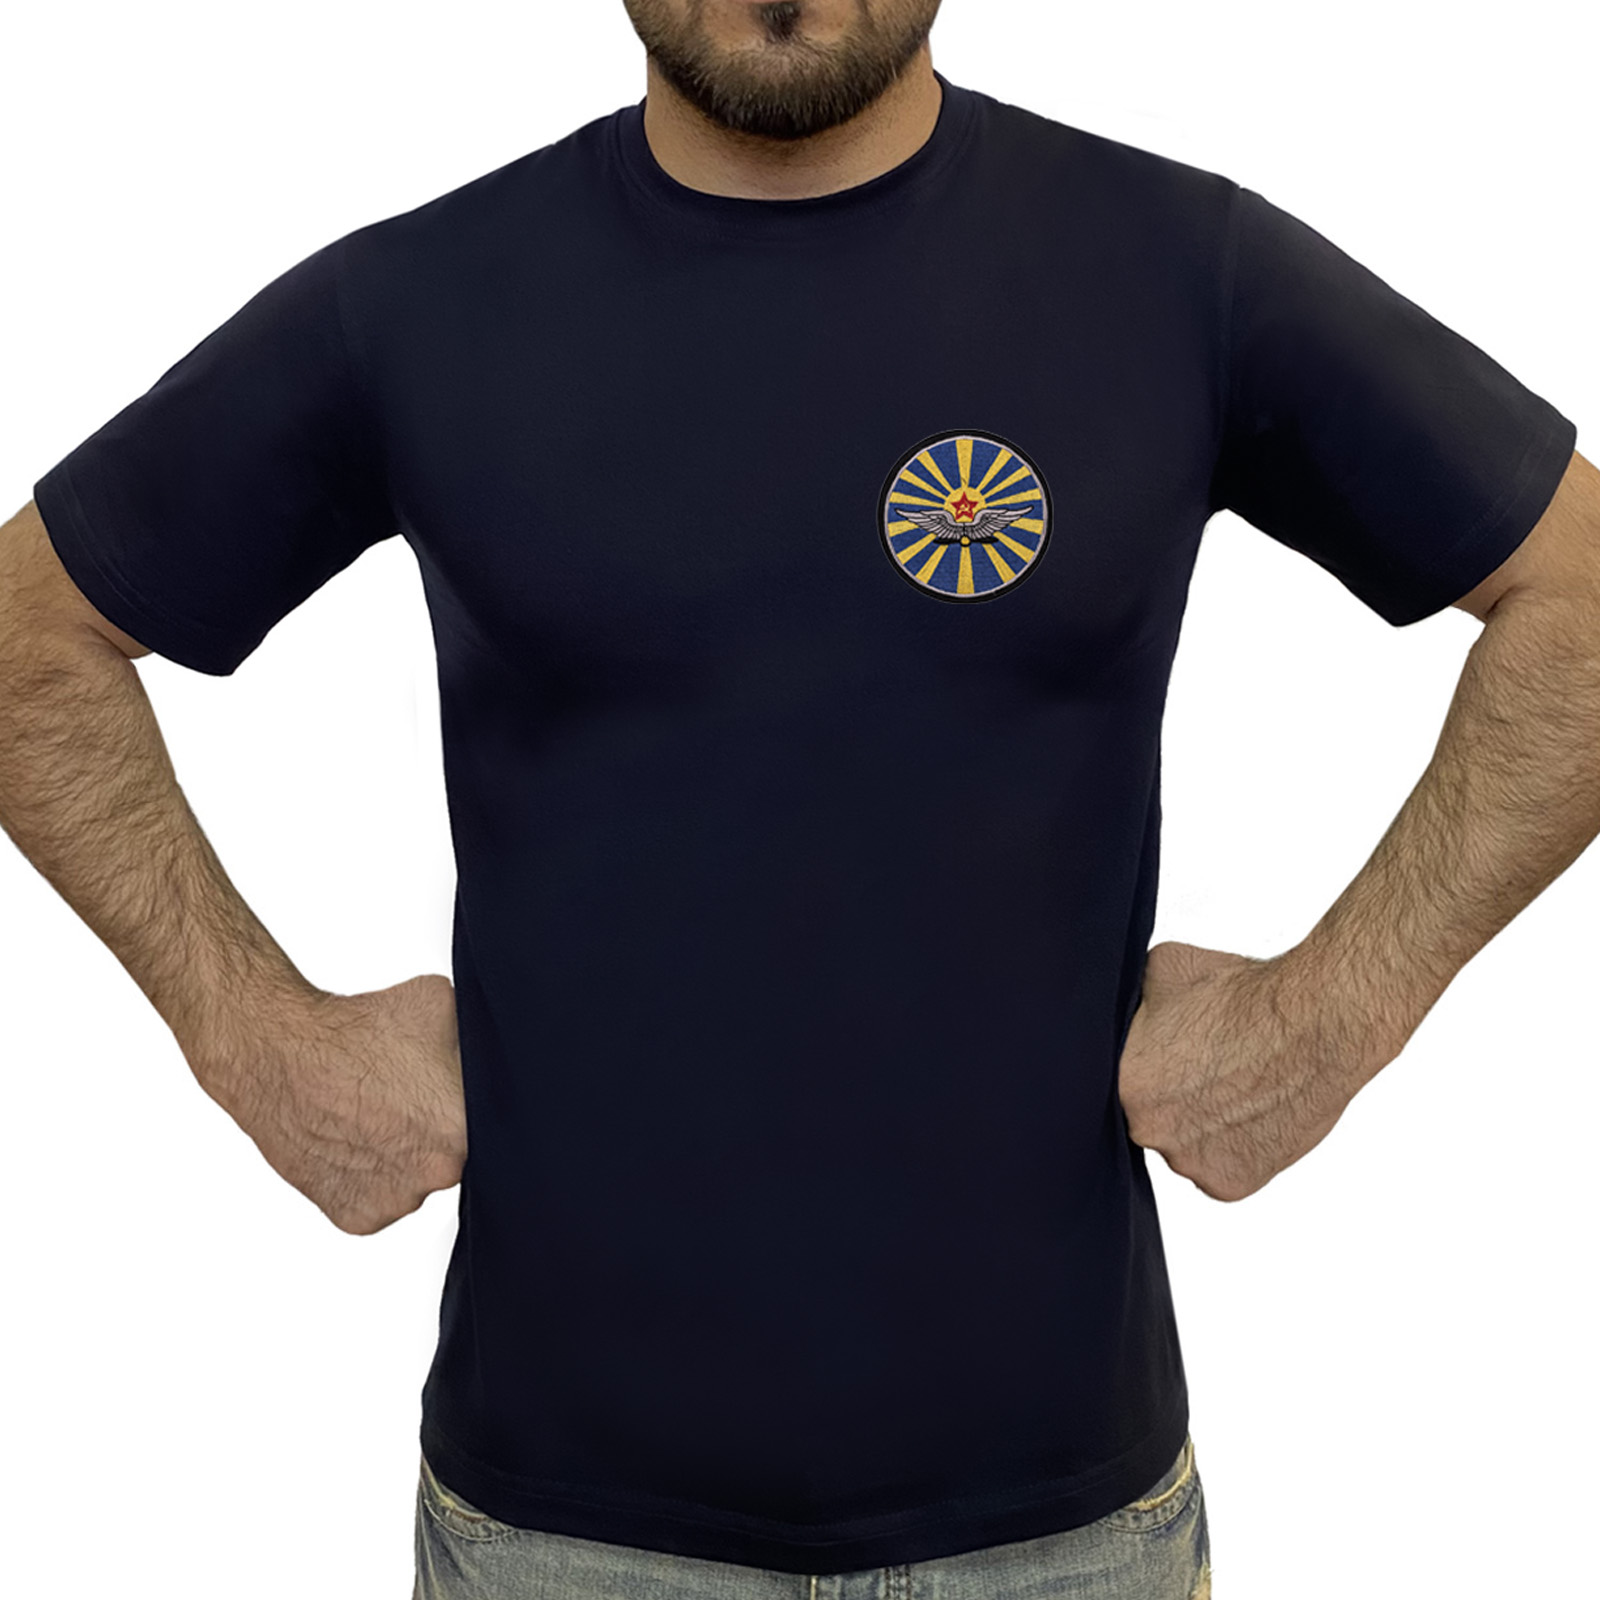 Купить в интернет магазине футболку с шевроном ВВС СССР 